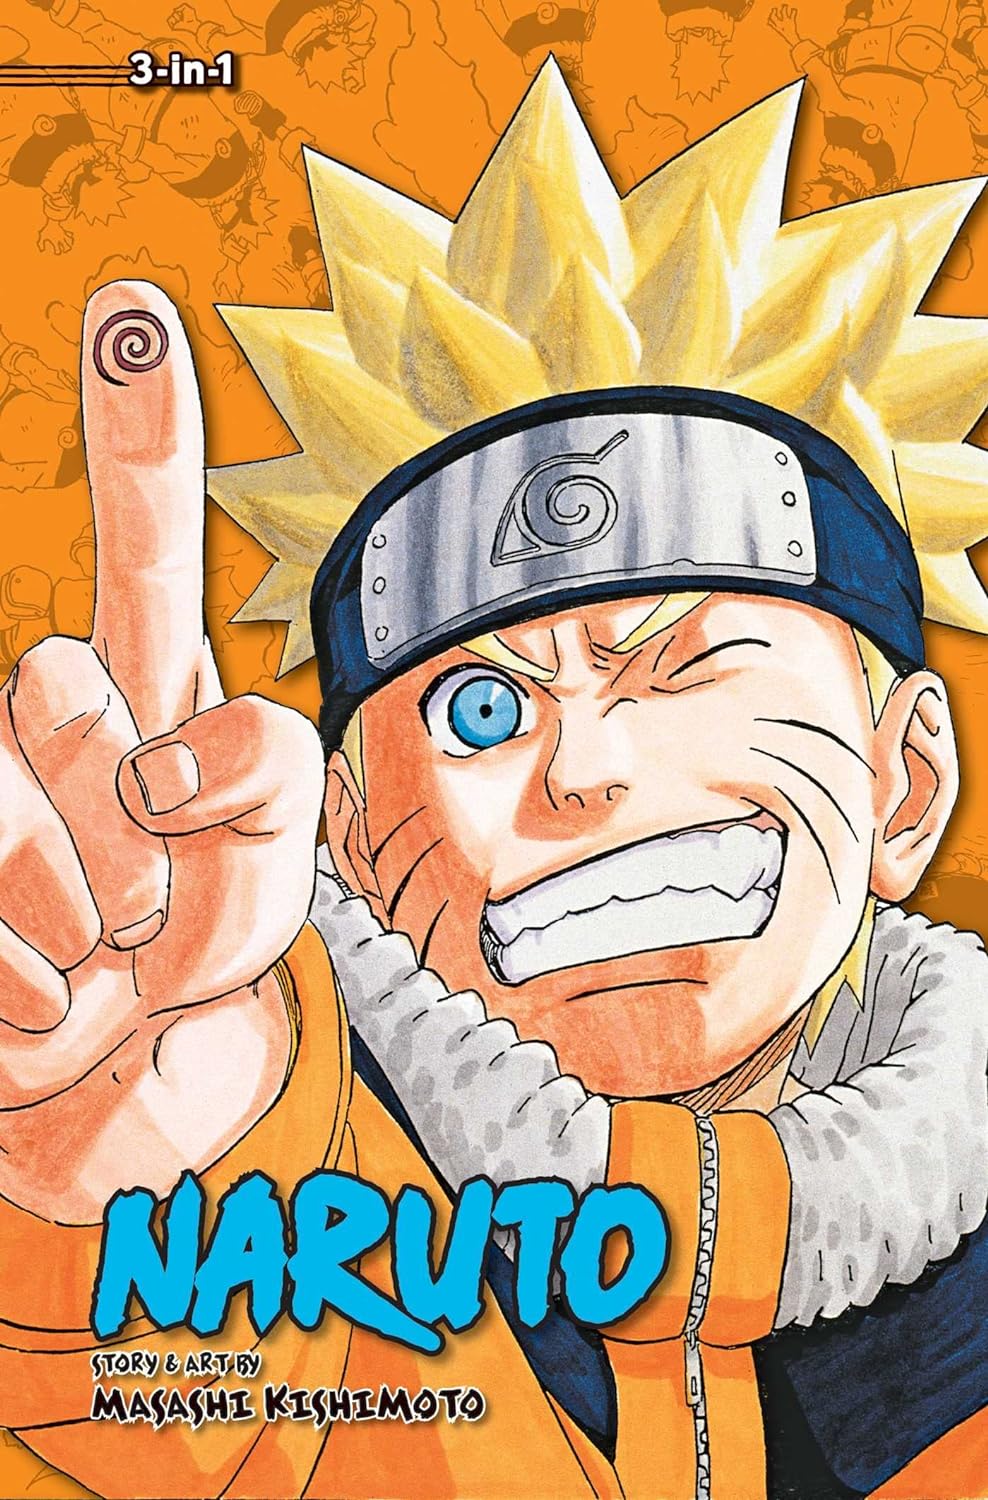 Naruto (3-in-1 Edition) Vol. 8 (Vol. 22, 23 & 24)